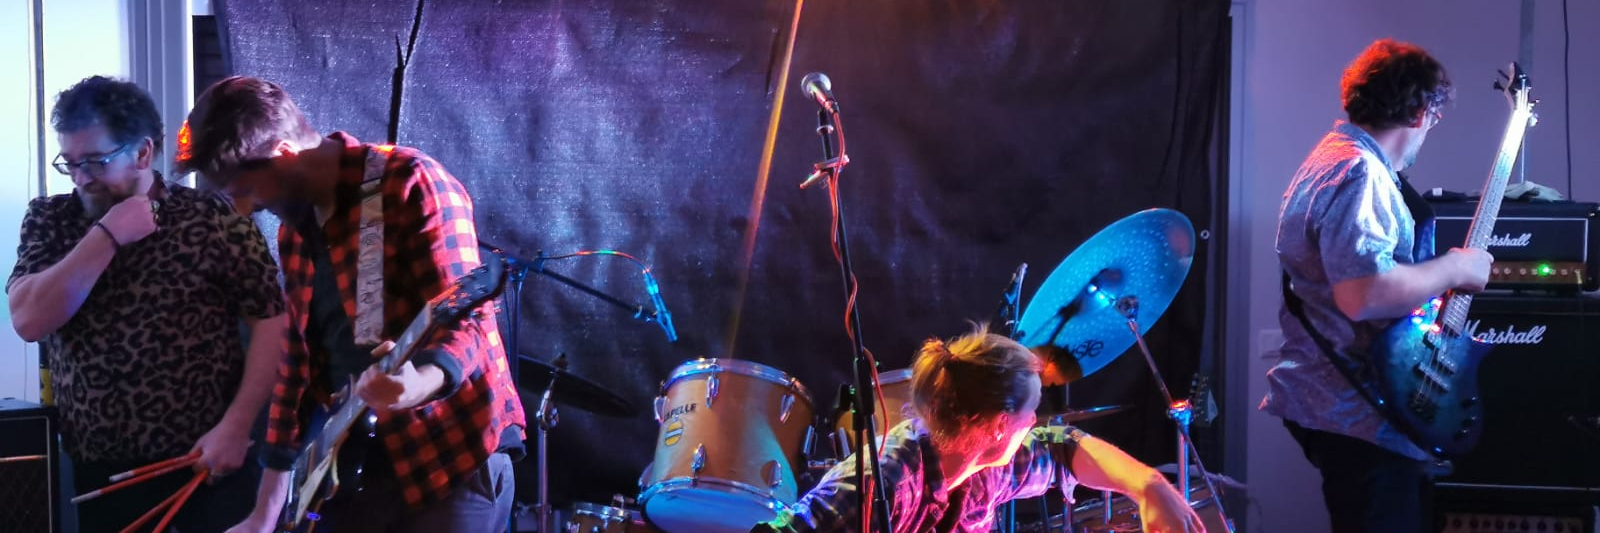 Gouest, groupe de musique Rock en représentation à Pyrénées Atlantiques - photo de couverture